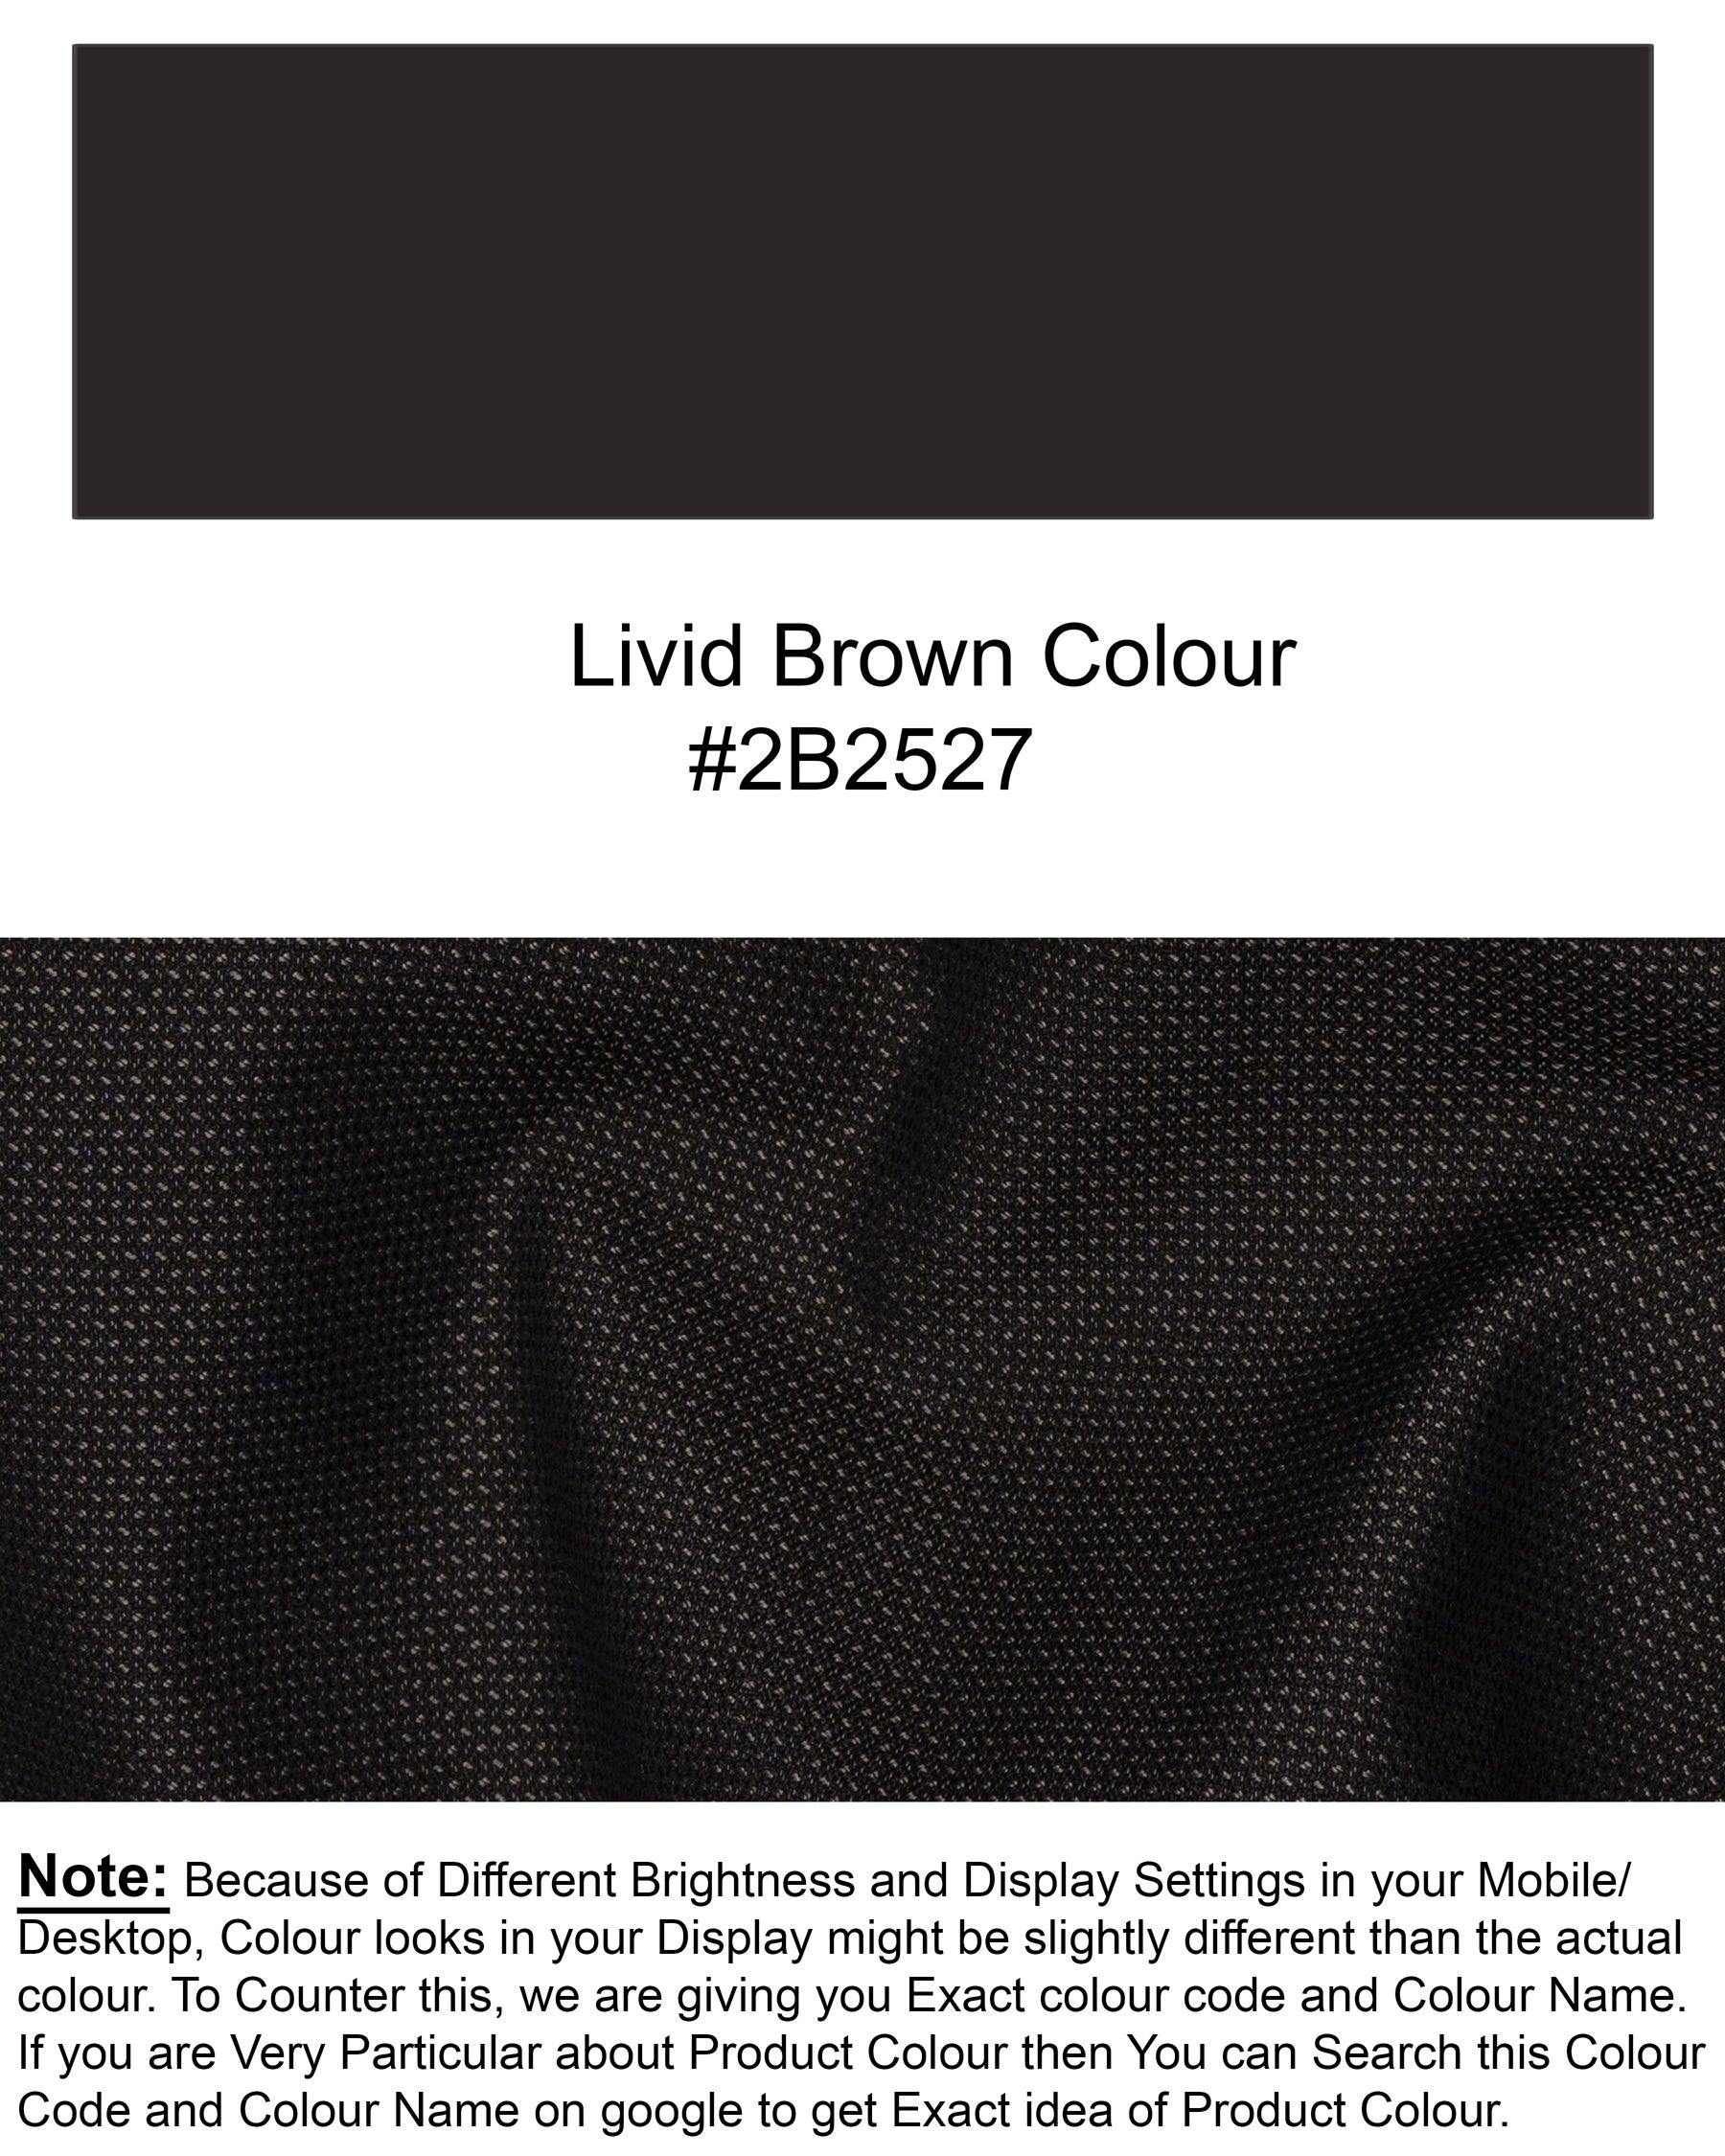 Dark Brown Cross Placket Wool Rich Bandhgala Suit